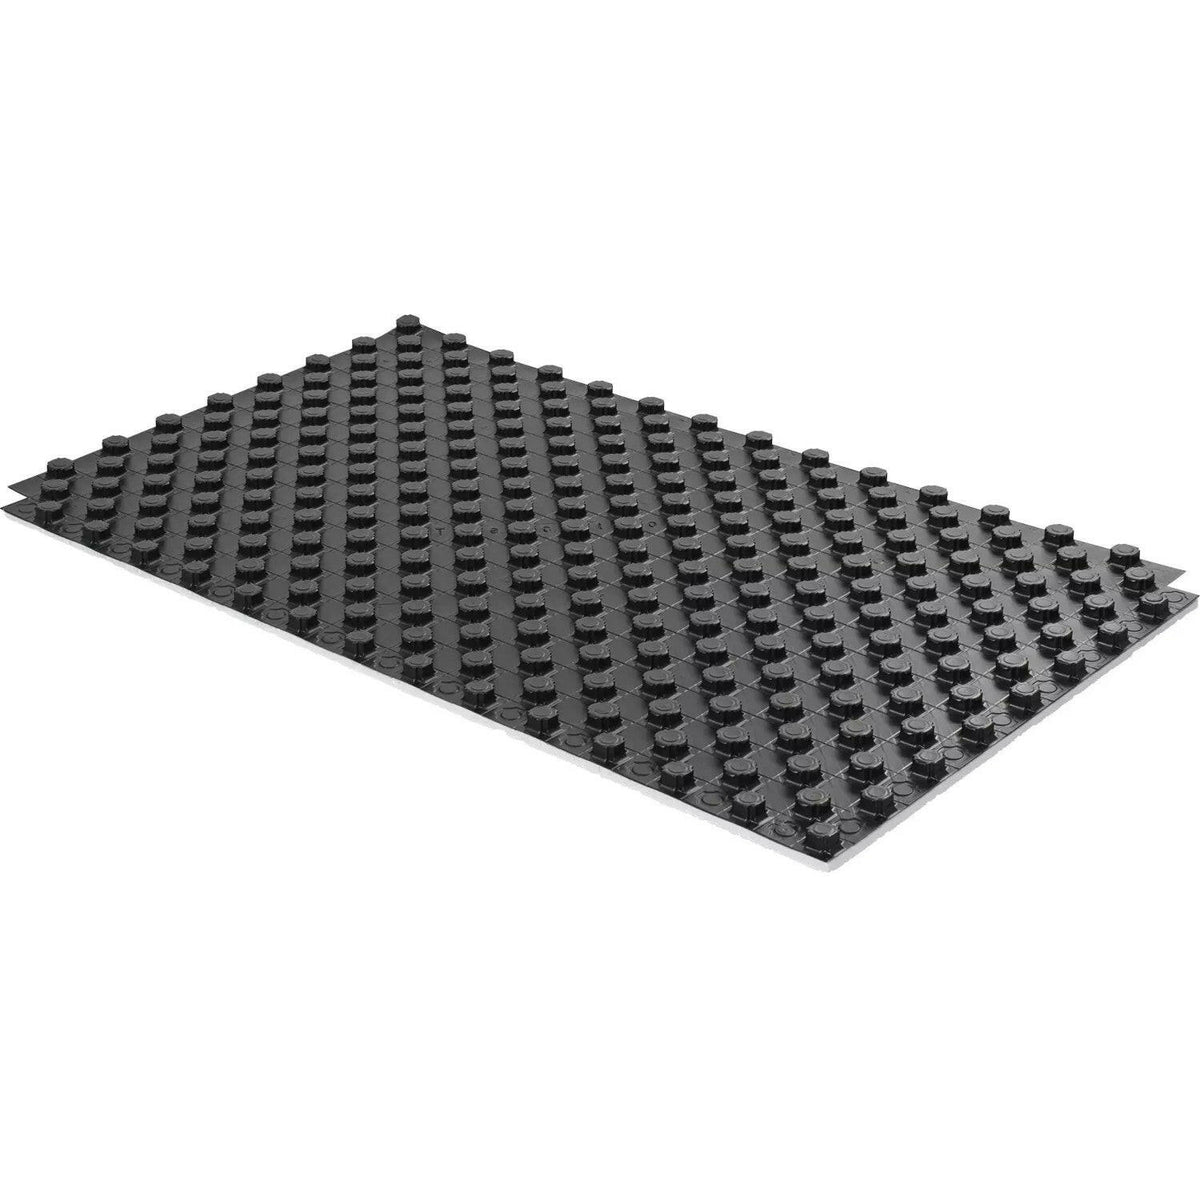 Uponor Tecto padlófűtés rendszerlemez 1450mm x 850mm x 52mm (1,23 m2) (14-17mm csövekhez) 500kg/m2-0